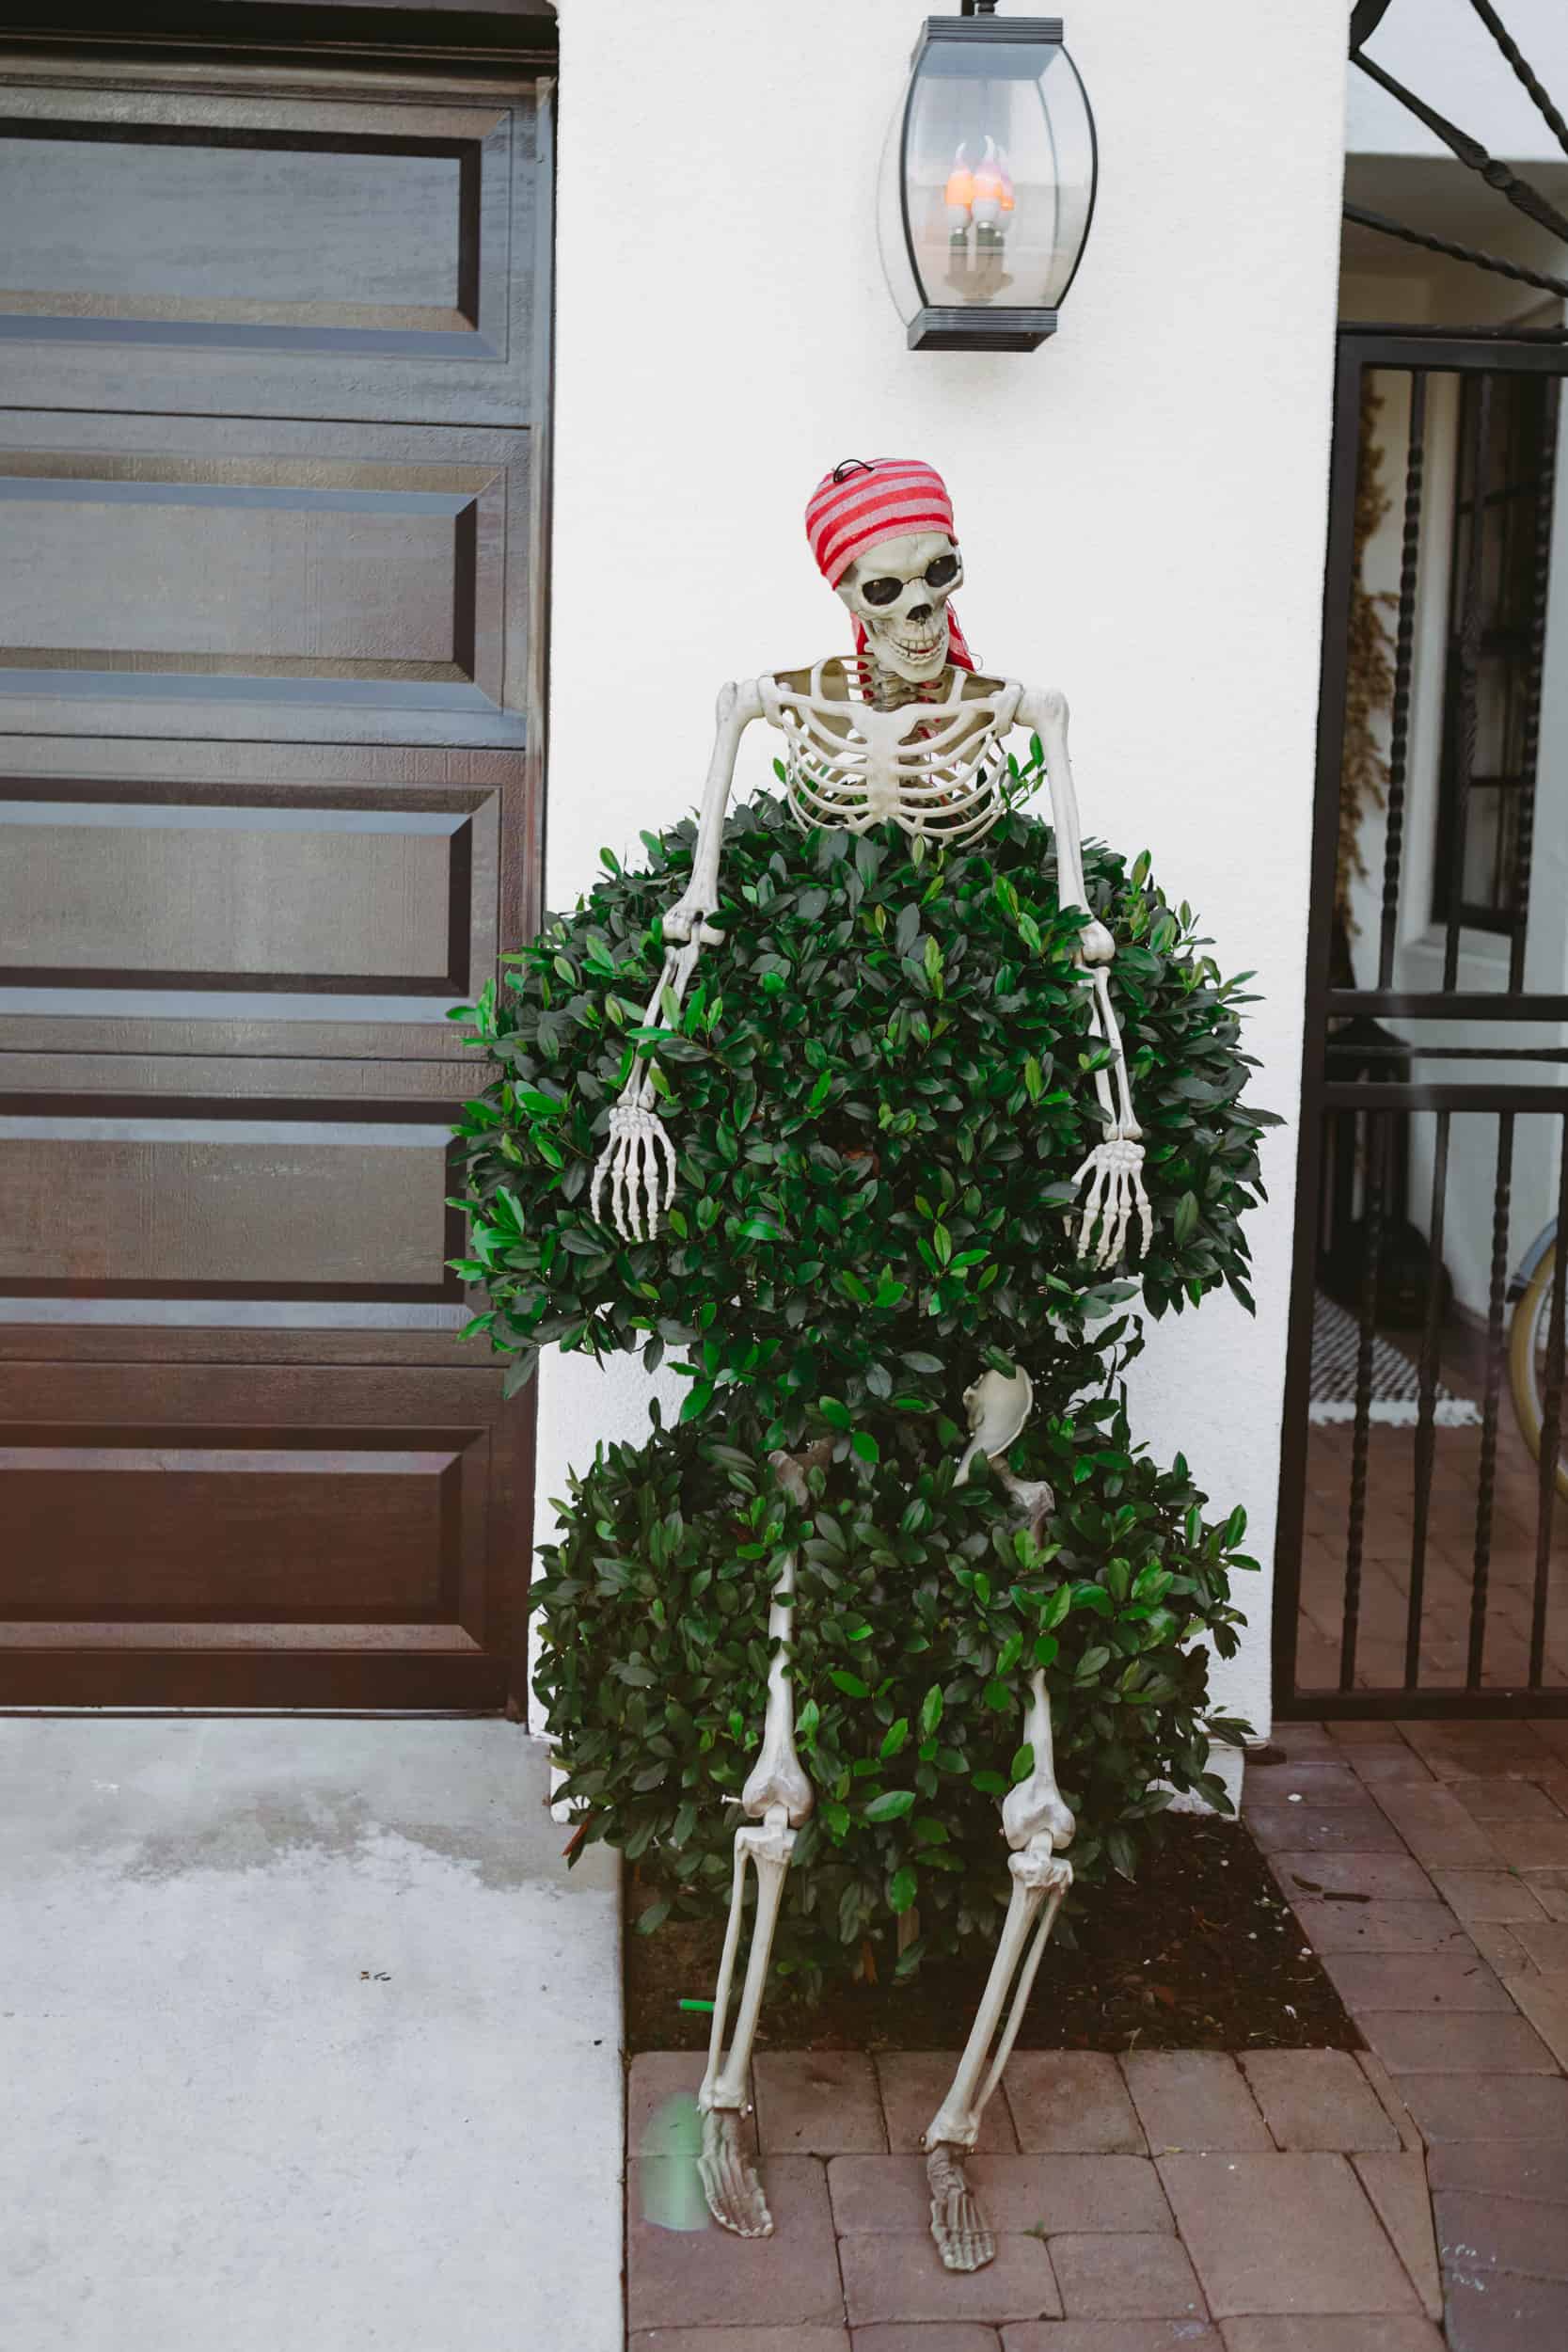 pirate skeleton in bushes